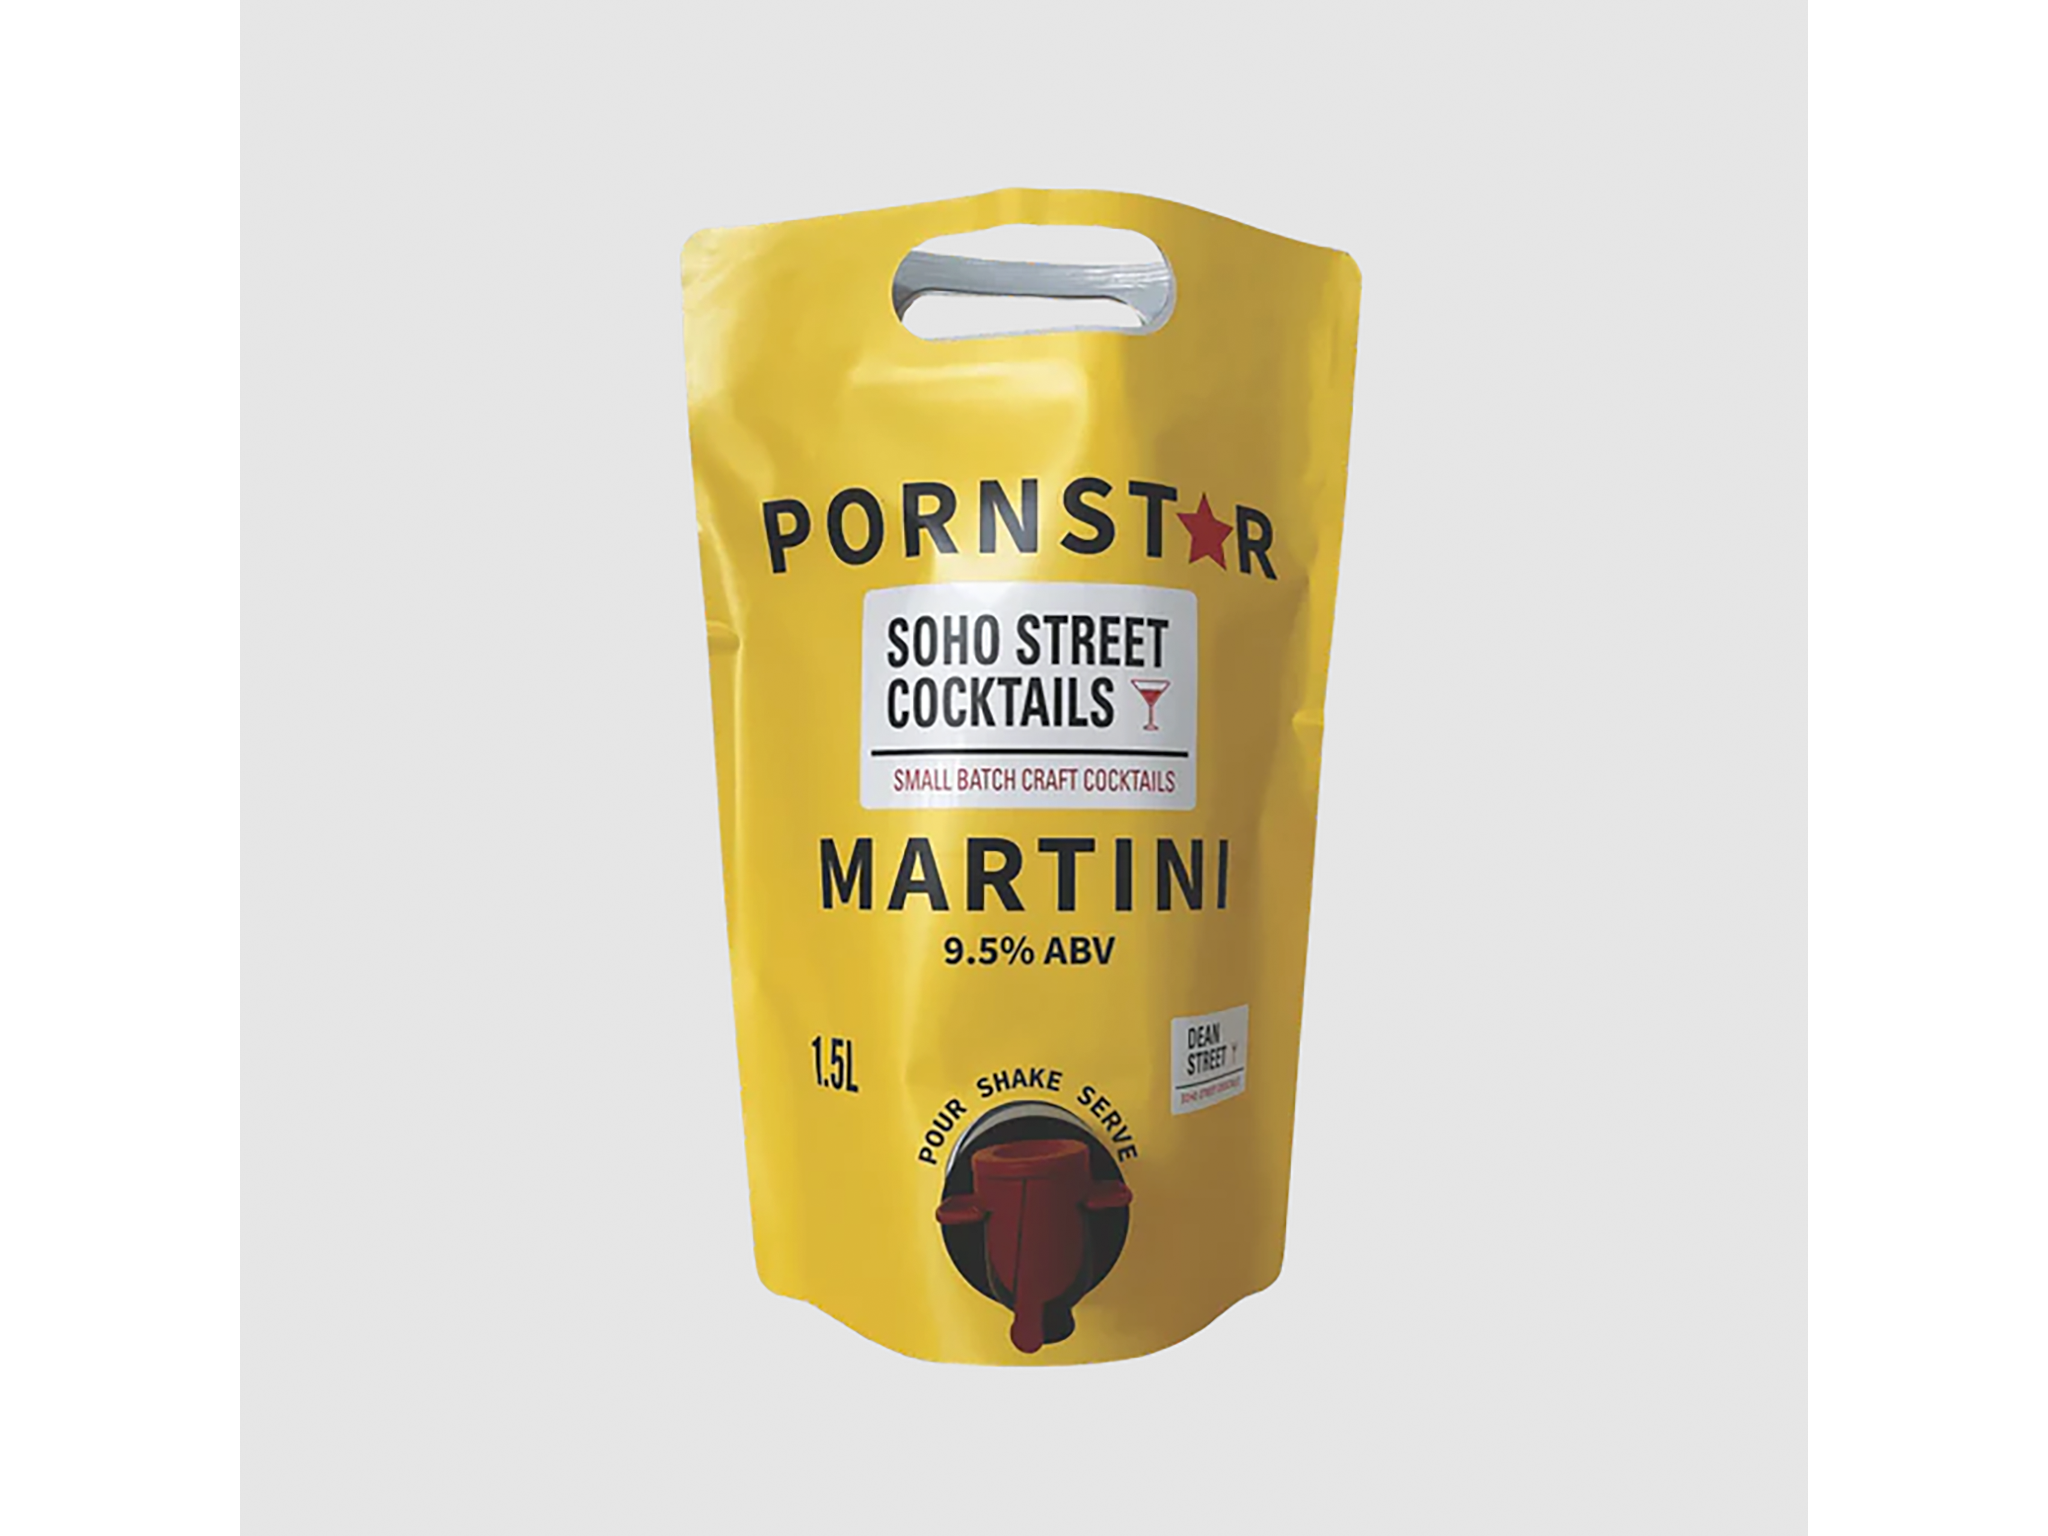 Soho Street Cocktails pornstar martini